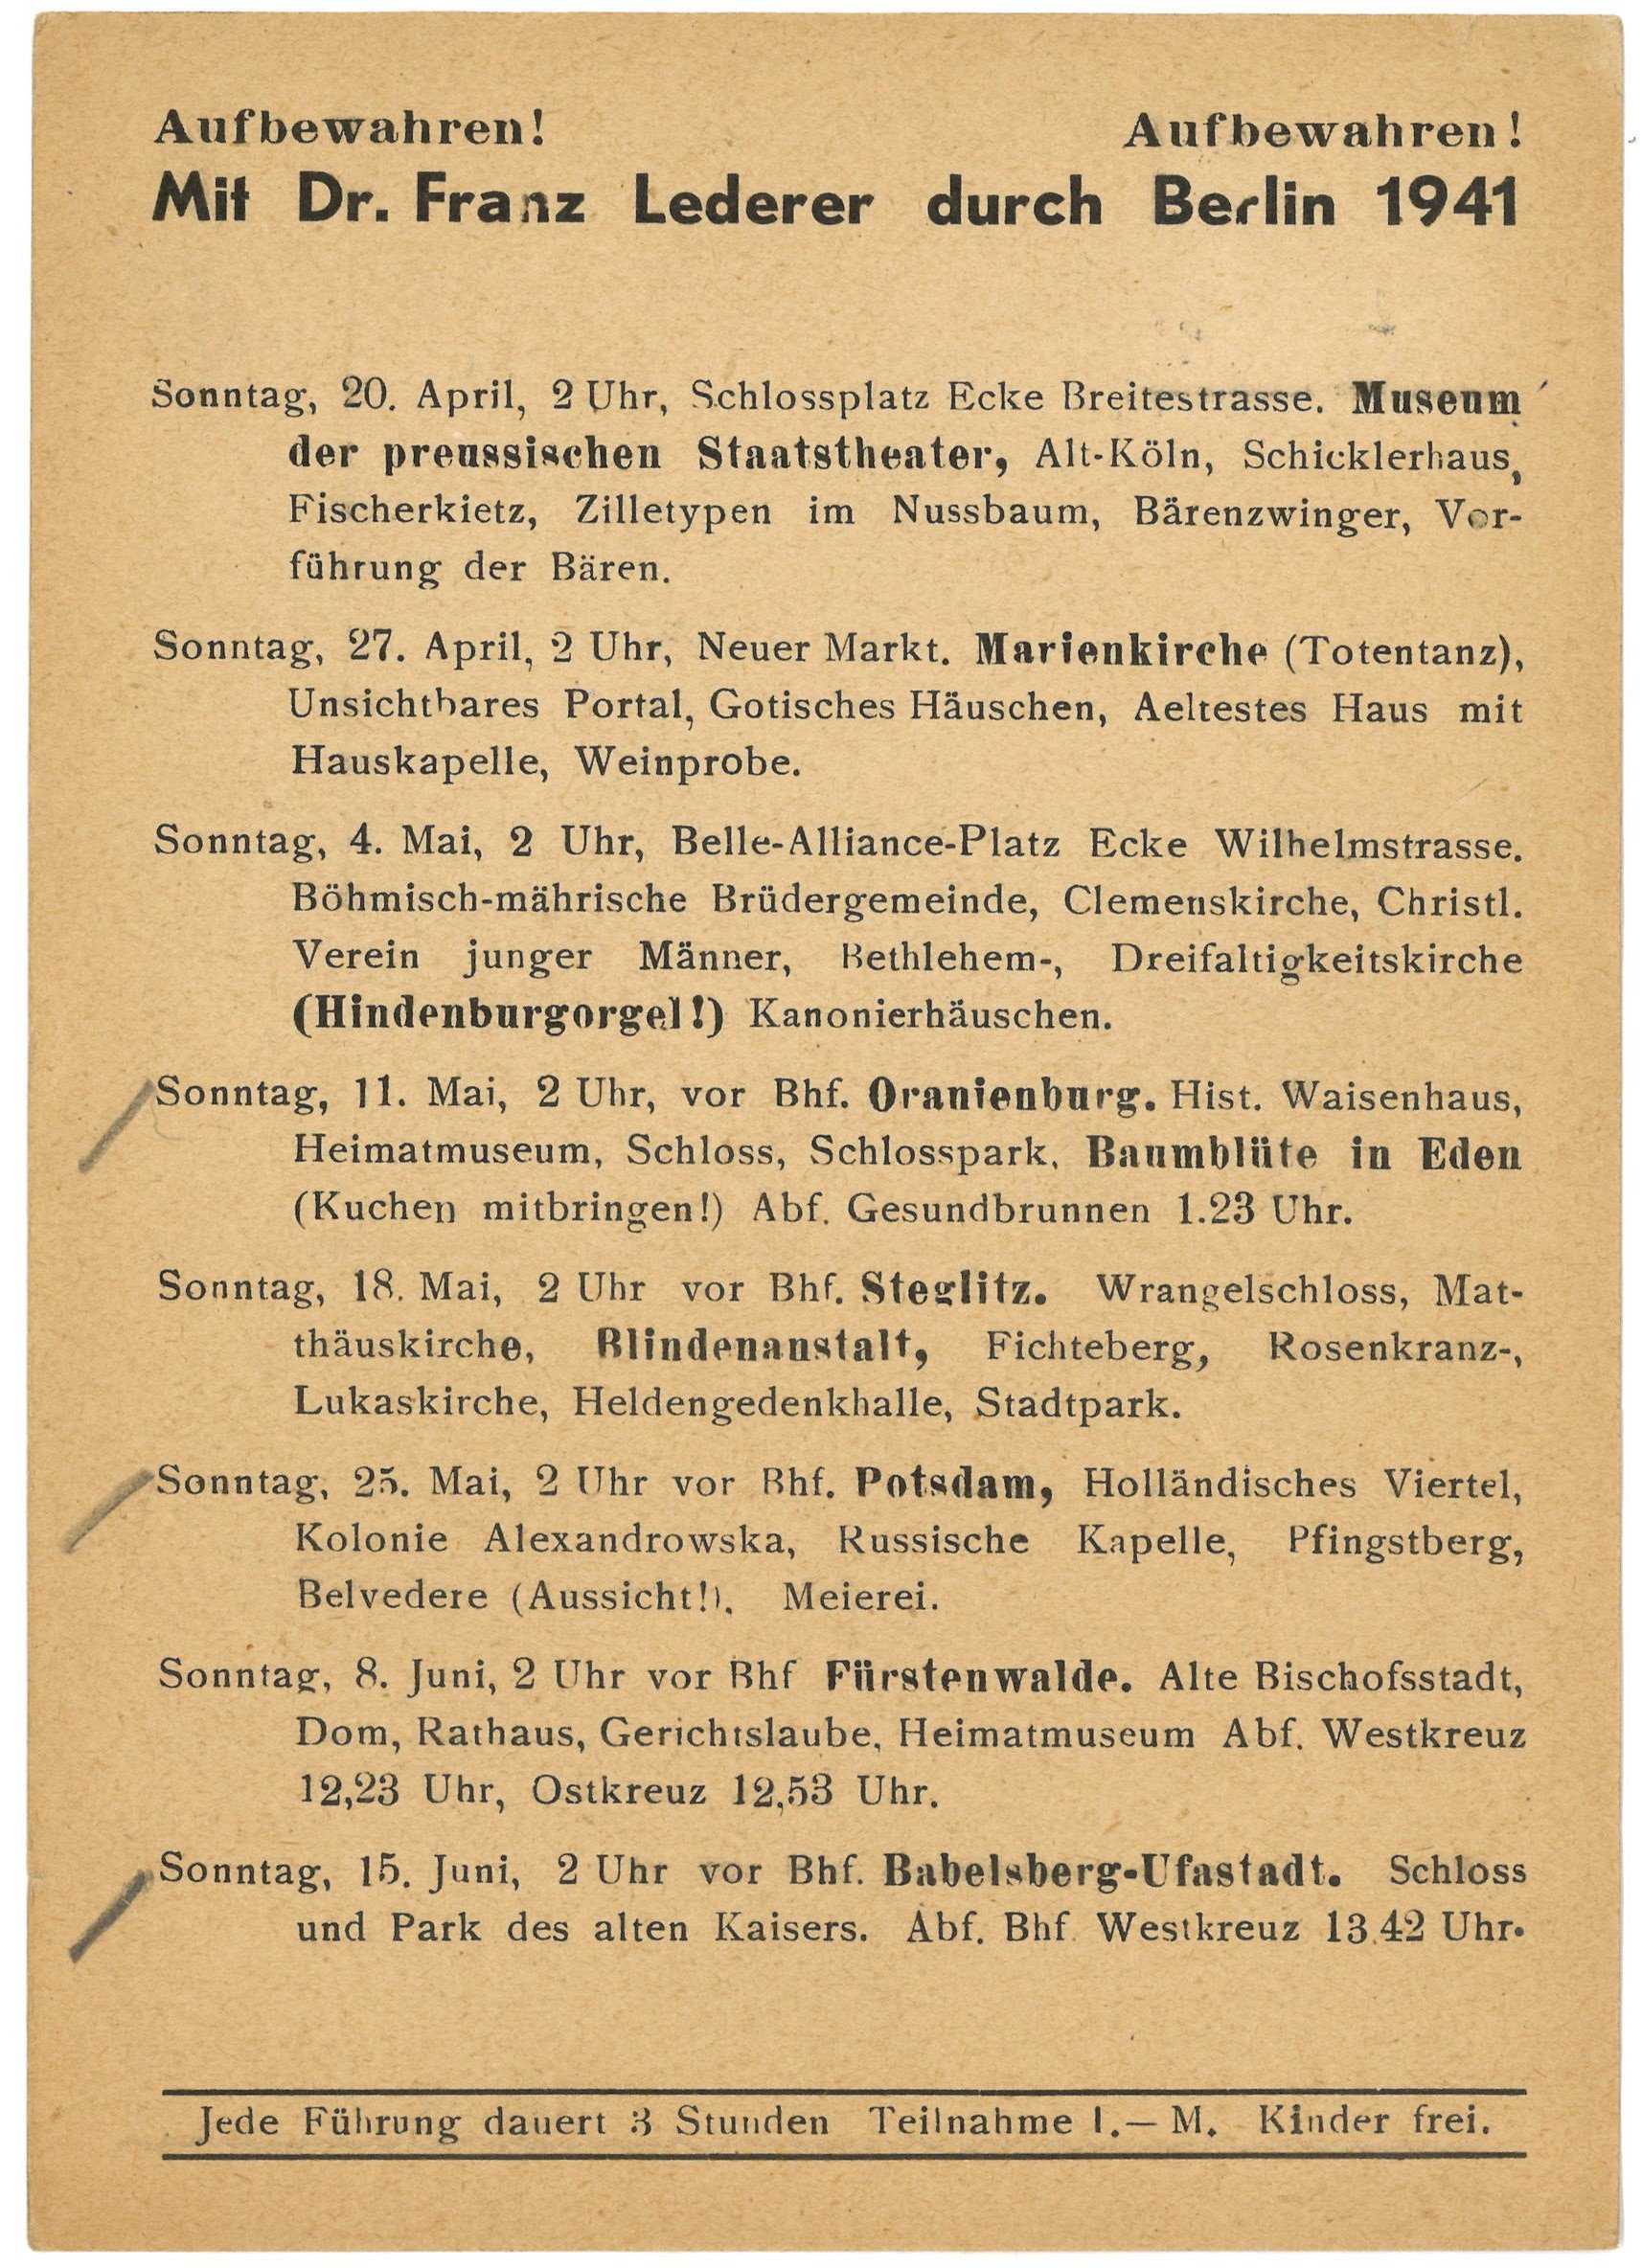 Programm der Berlin-Führungen von Dr. Franz Lederer für April bis Juni 1941 (Landesgeschichtliche Vereinigung für die Mark Brandenburg e.V., Archiv CC BY)